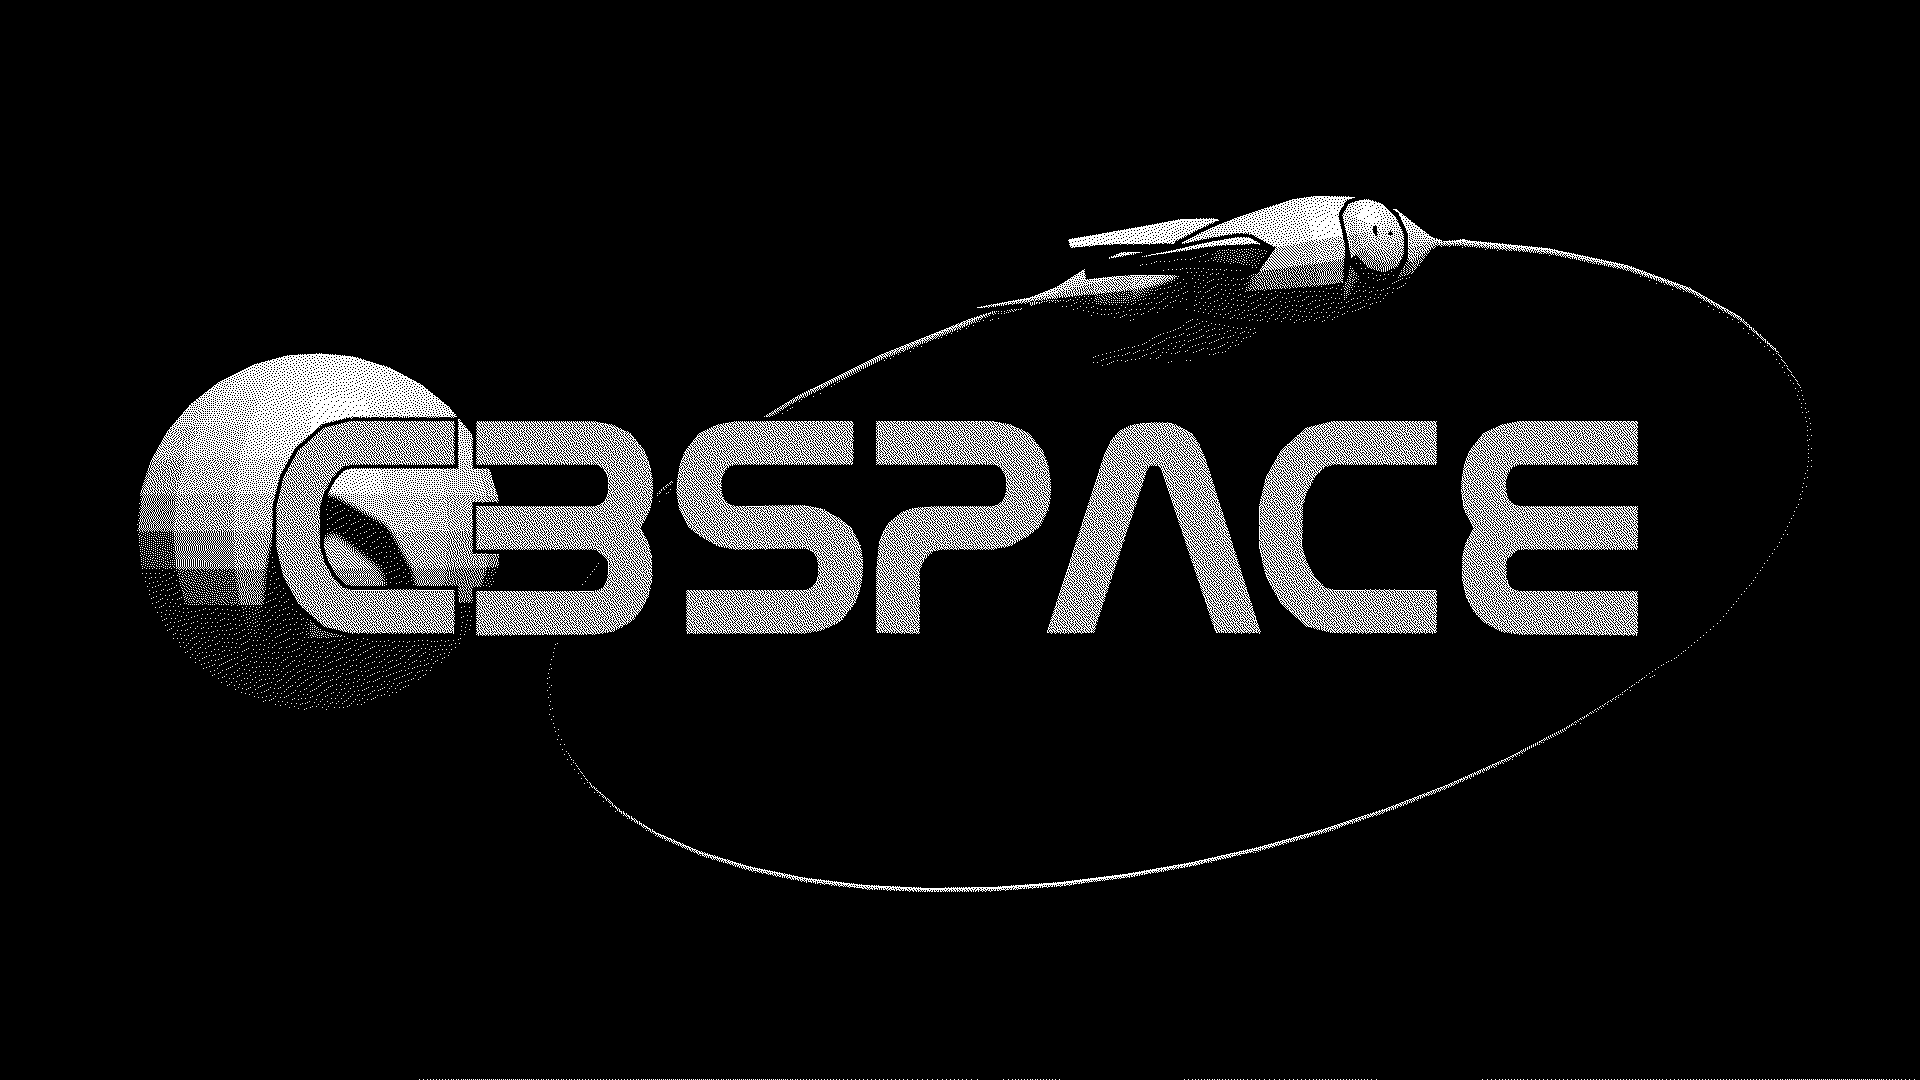 C3Space